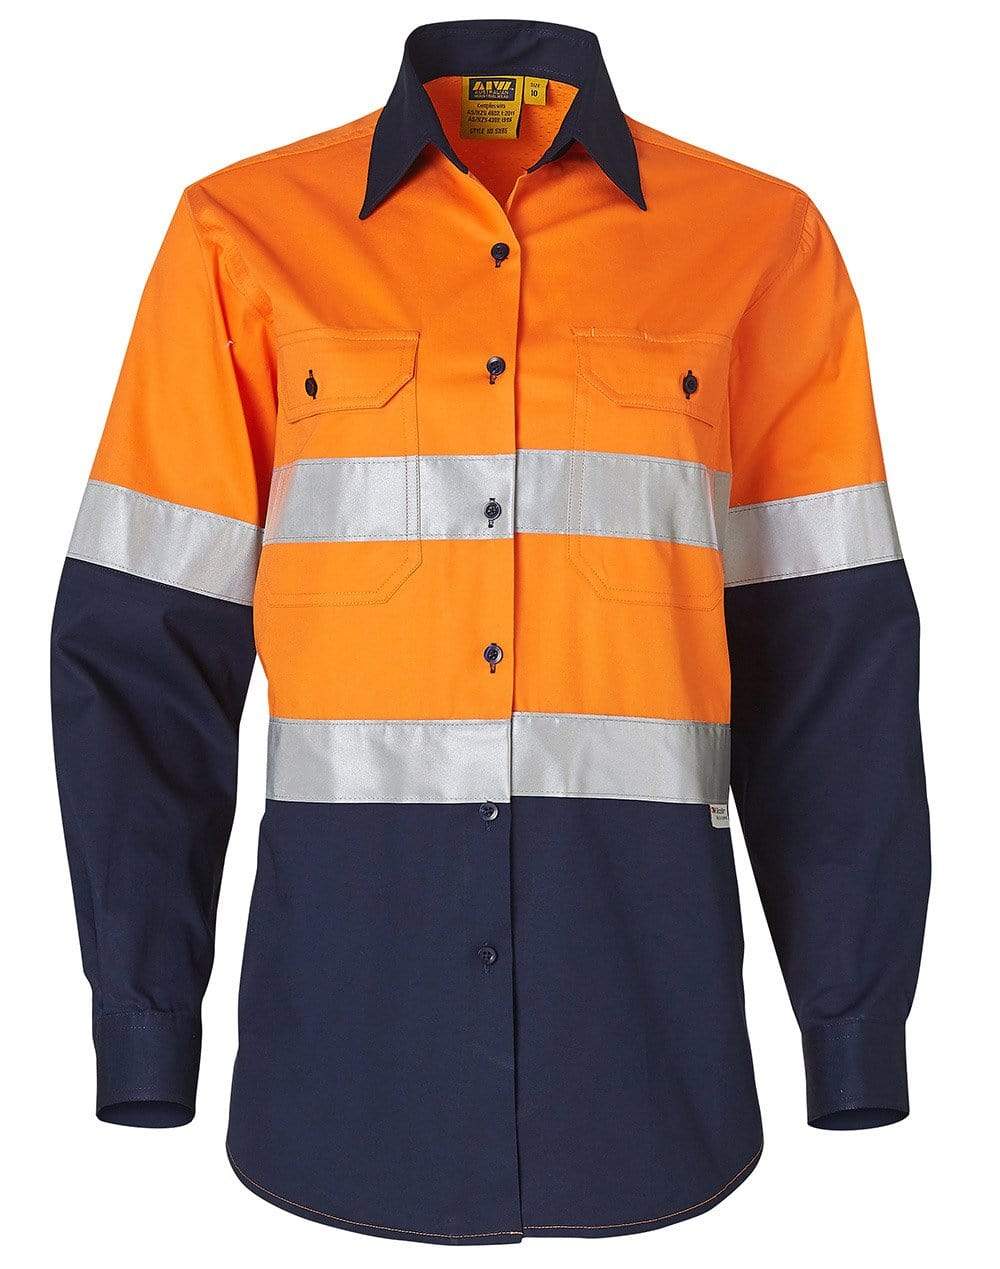 Women's Long Sleeve Safety Shirt SW65 Work Wear Australian Industrial Wear Fluoro Orange/Navy 8 